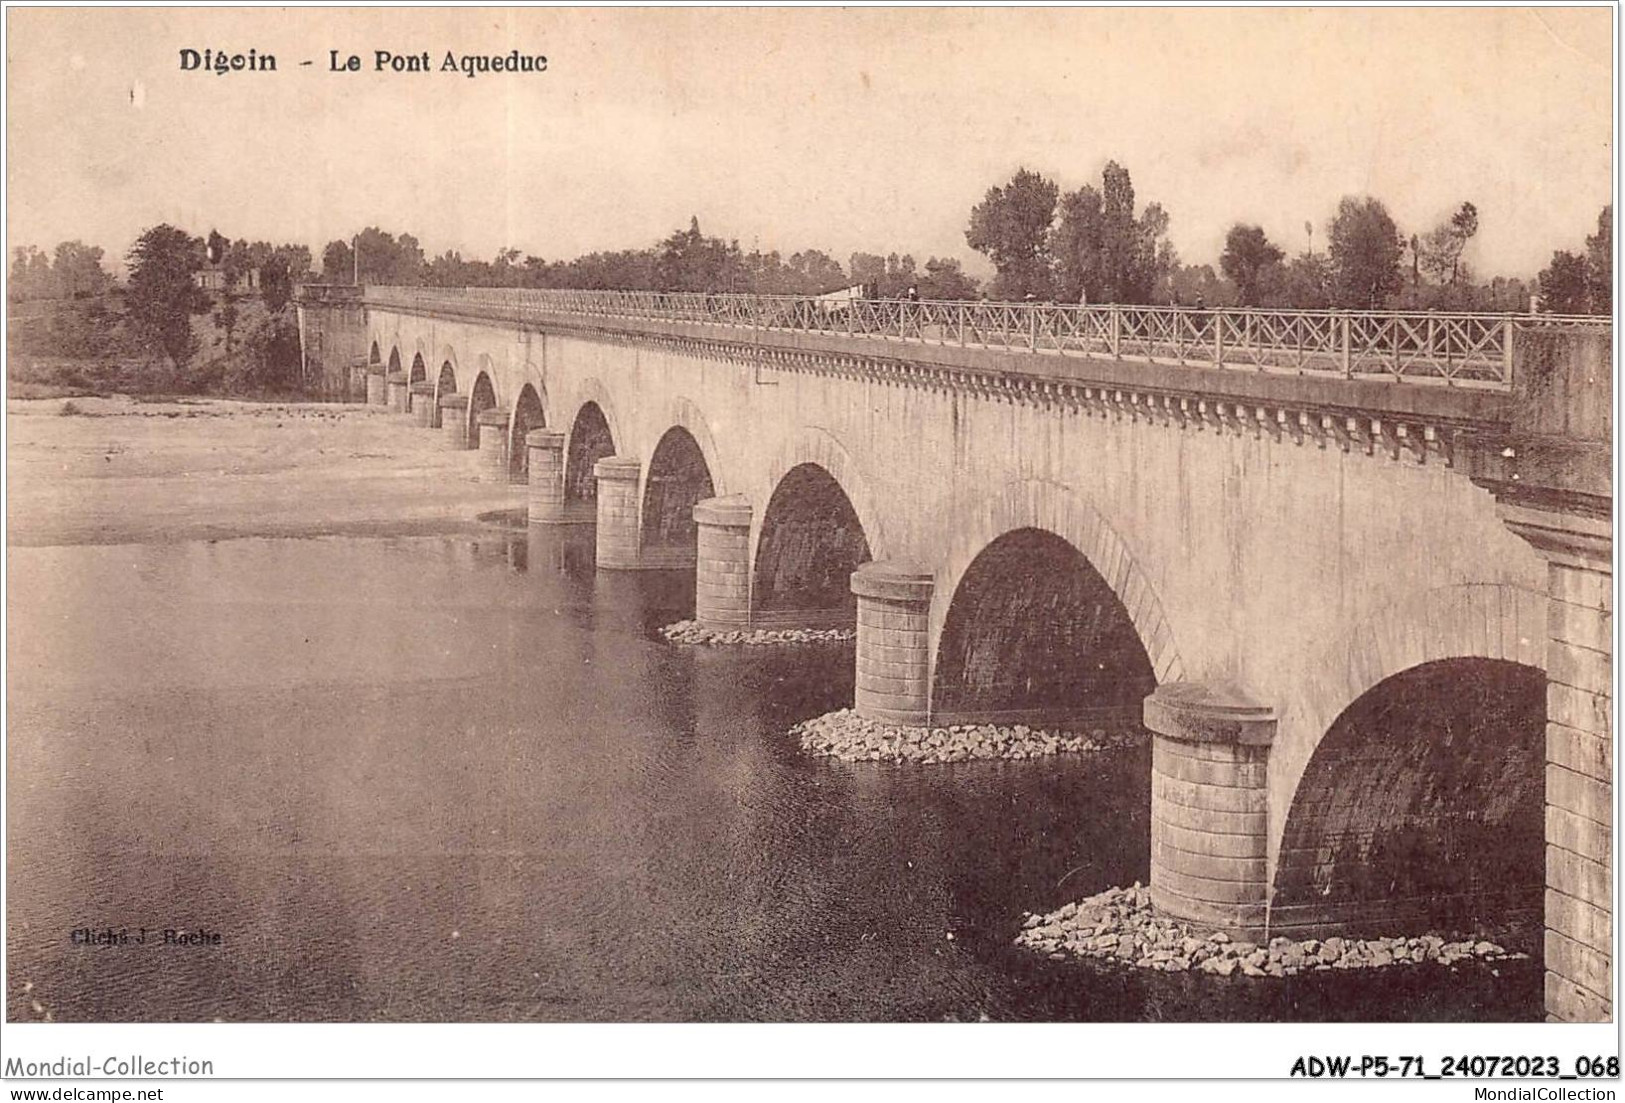 ADWP5-71-0422 - DIGOIN - Le Pont Aqueduc  - Digoin